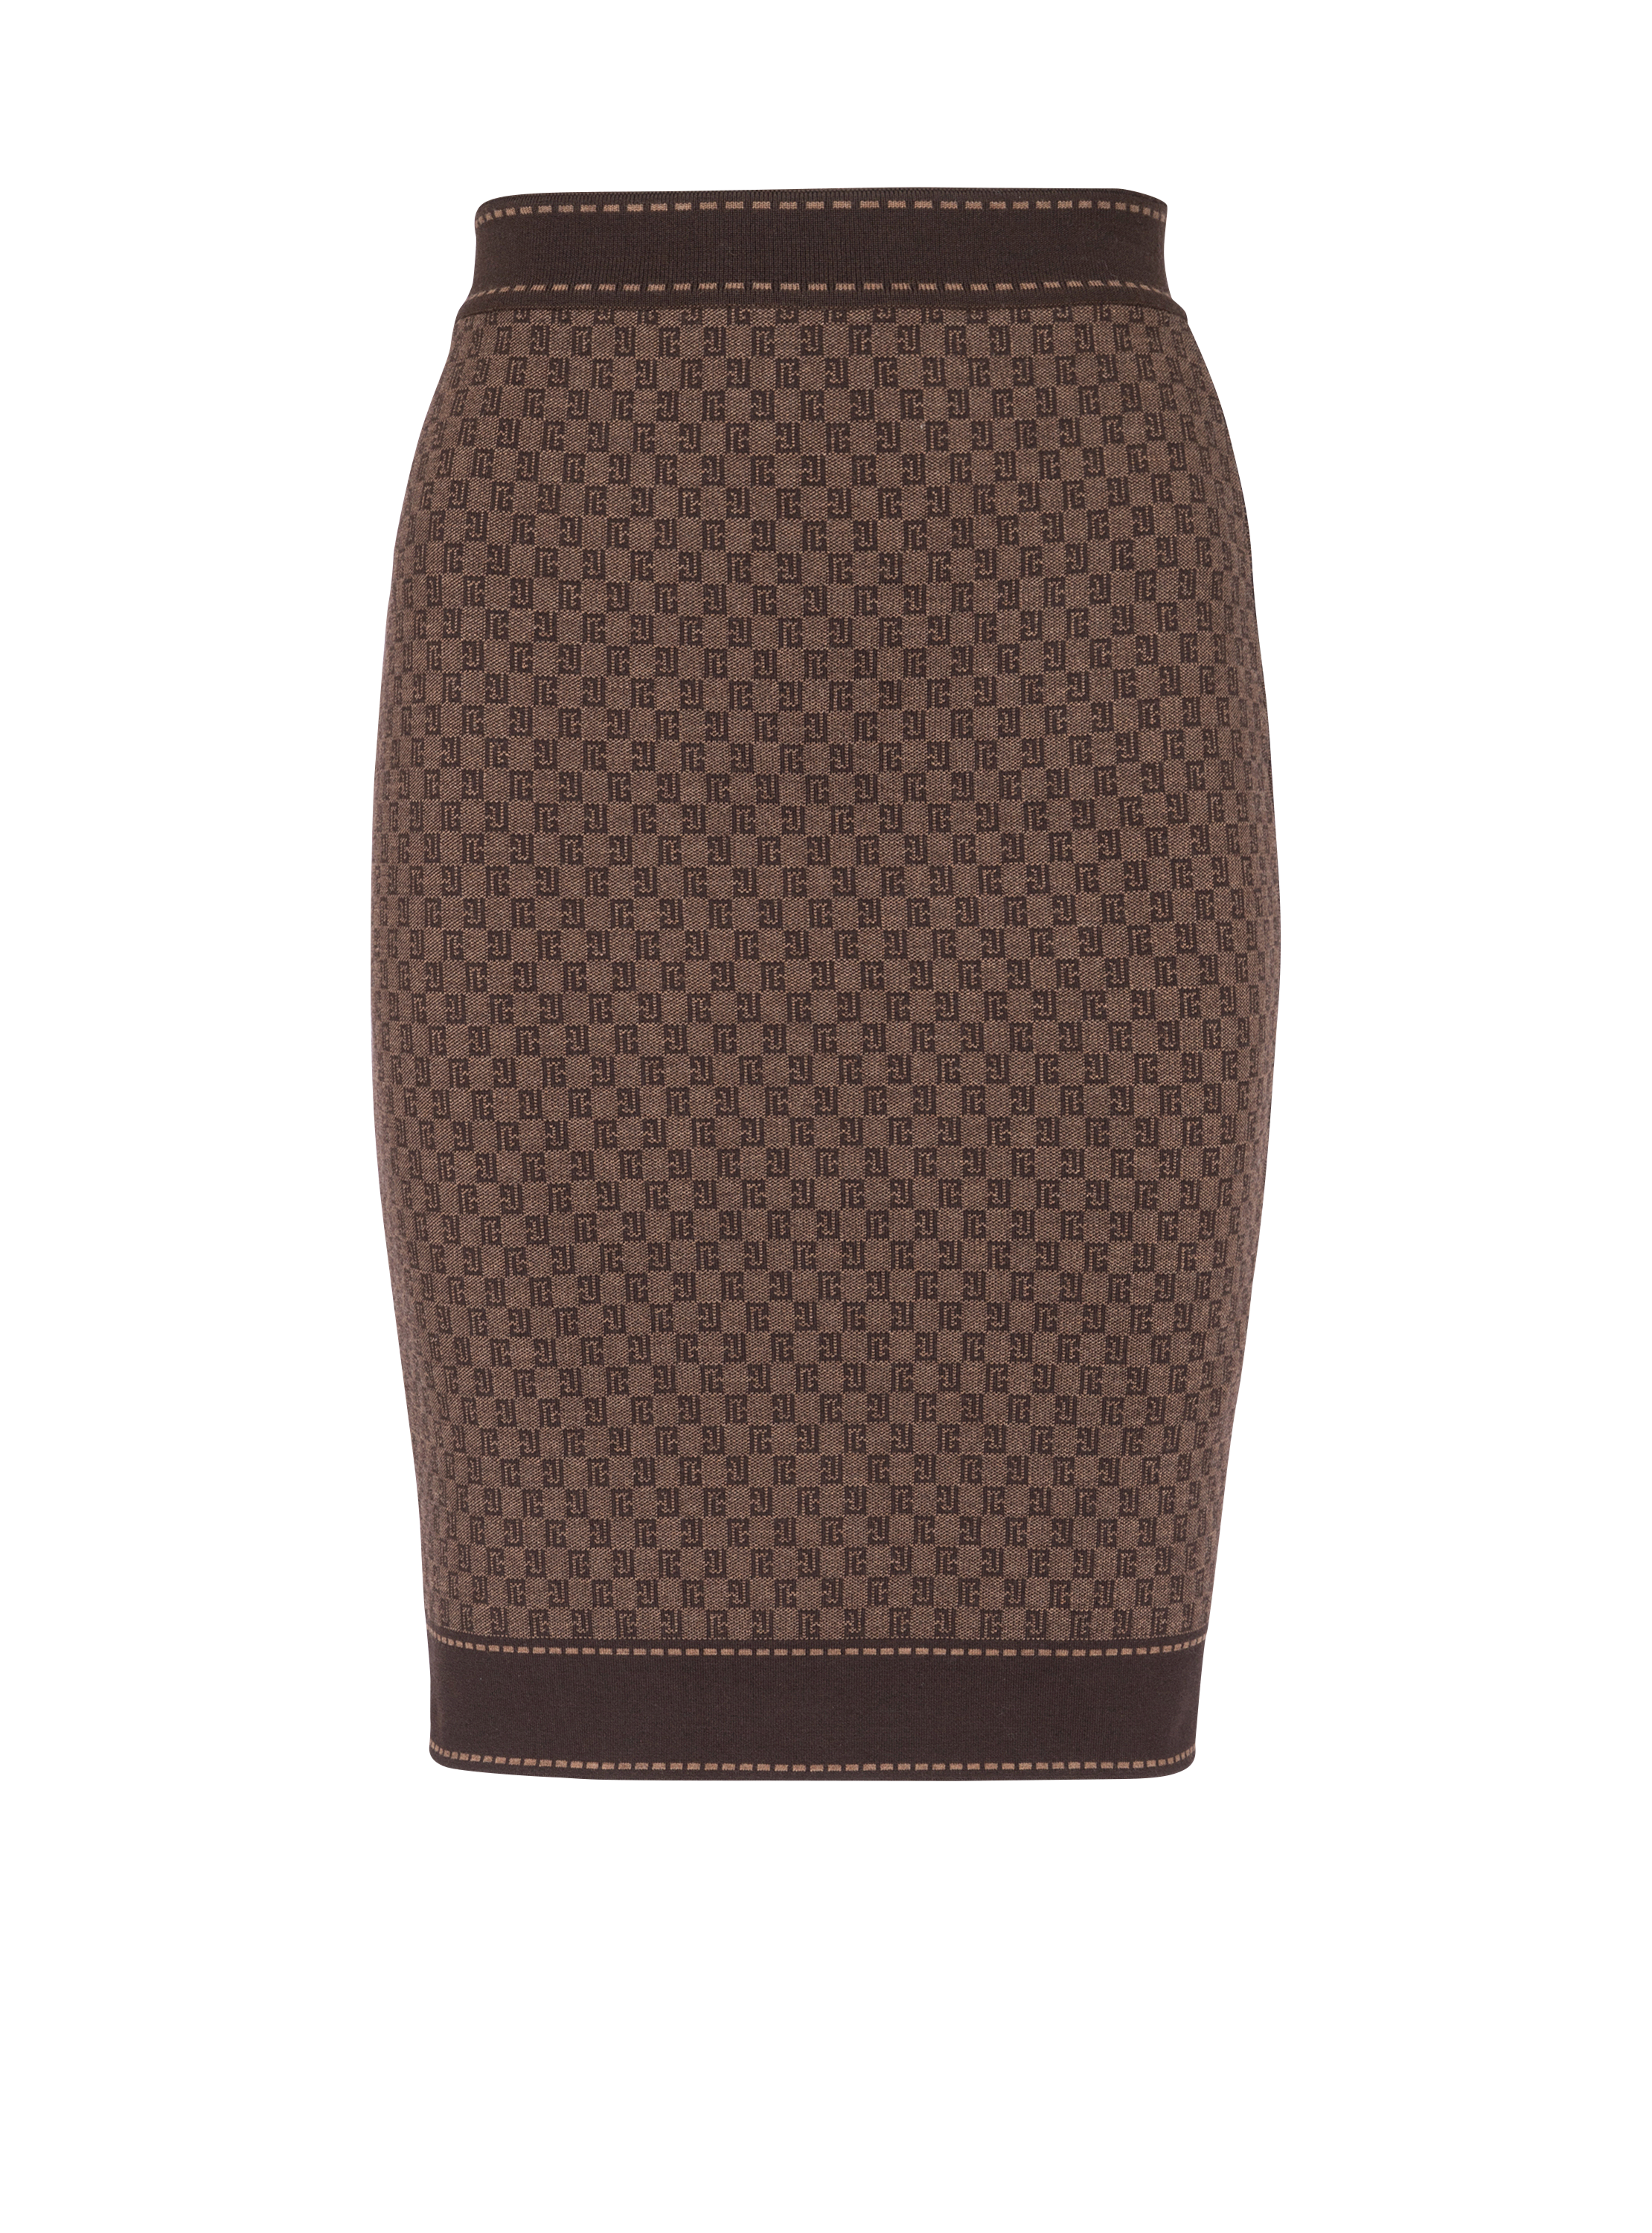 Mini monogram jacquard skirt, brown, hi-res